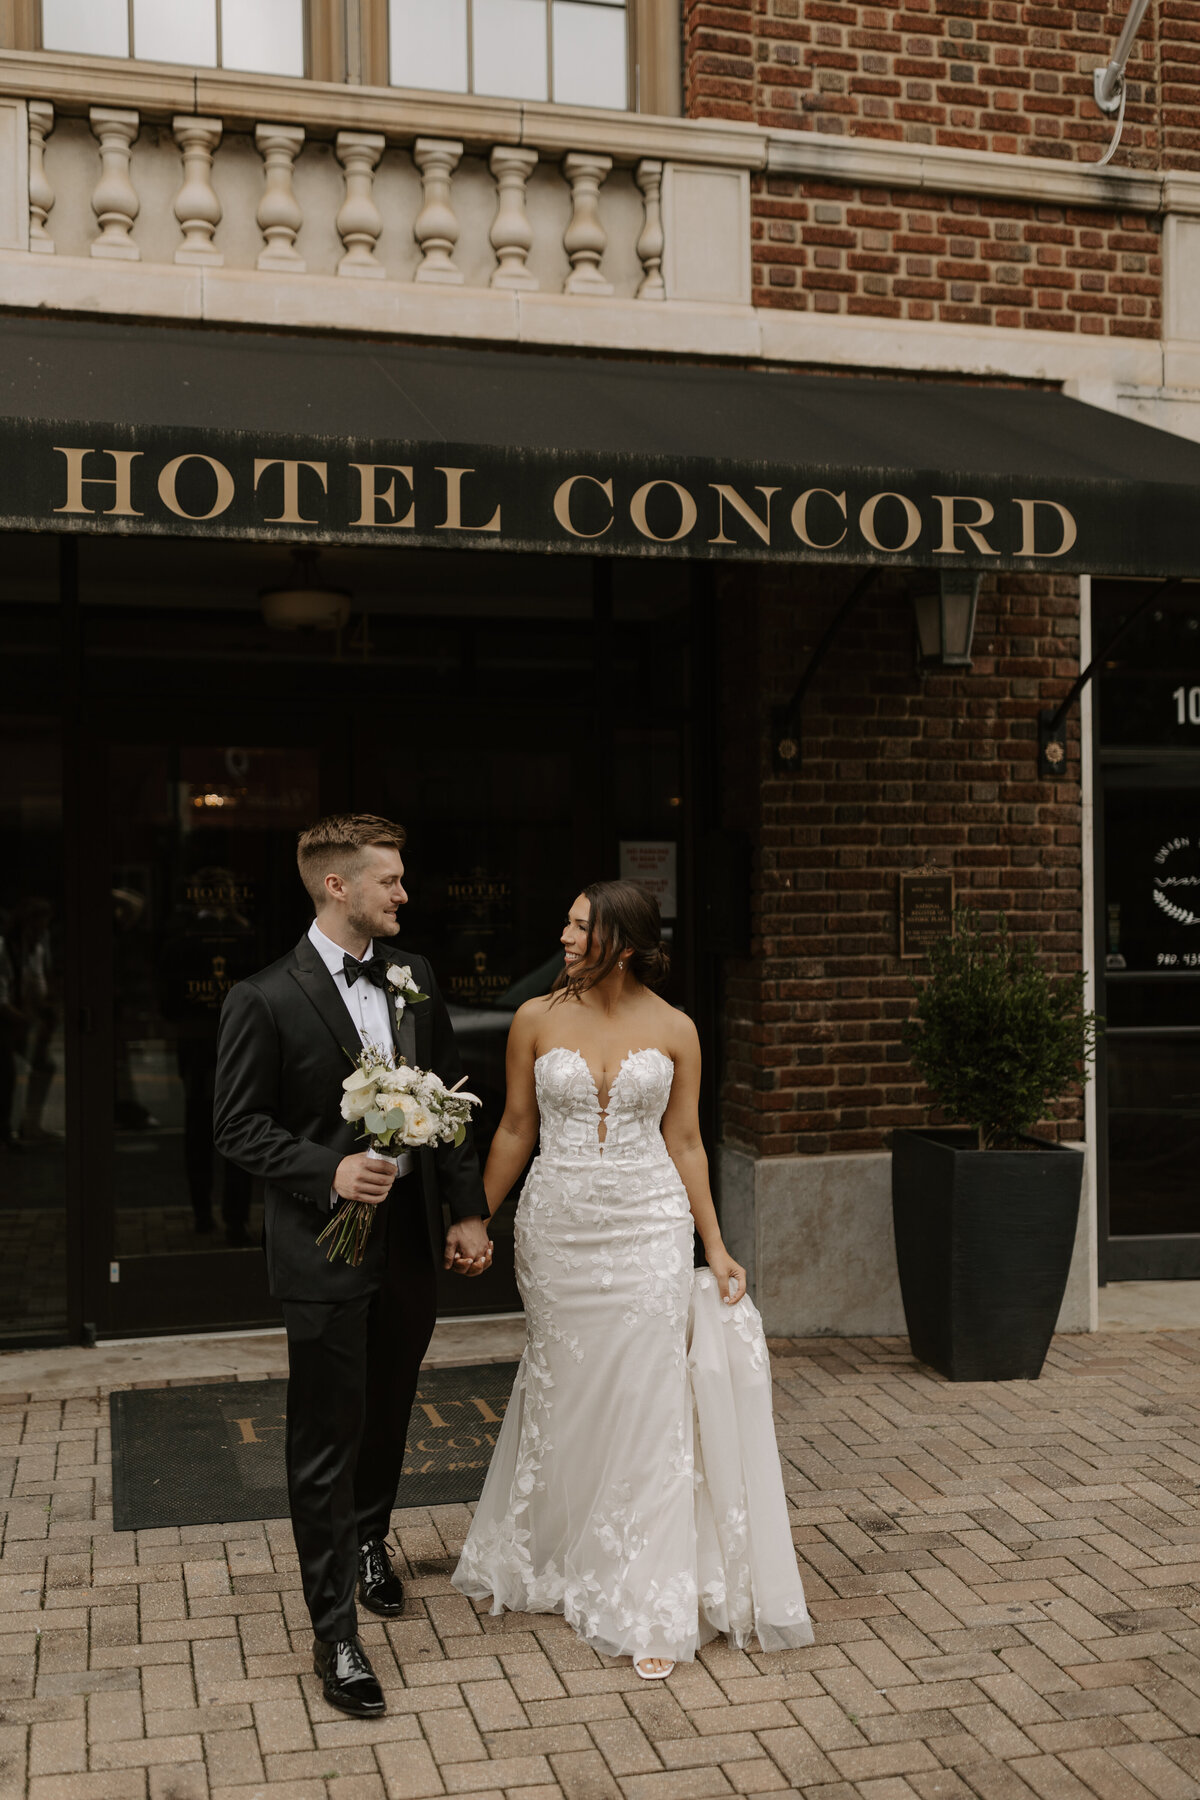 modern-hotel-concord-wedding-14012